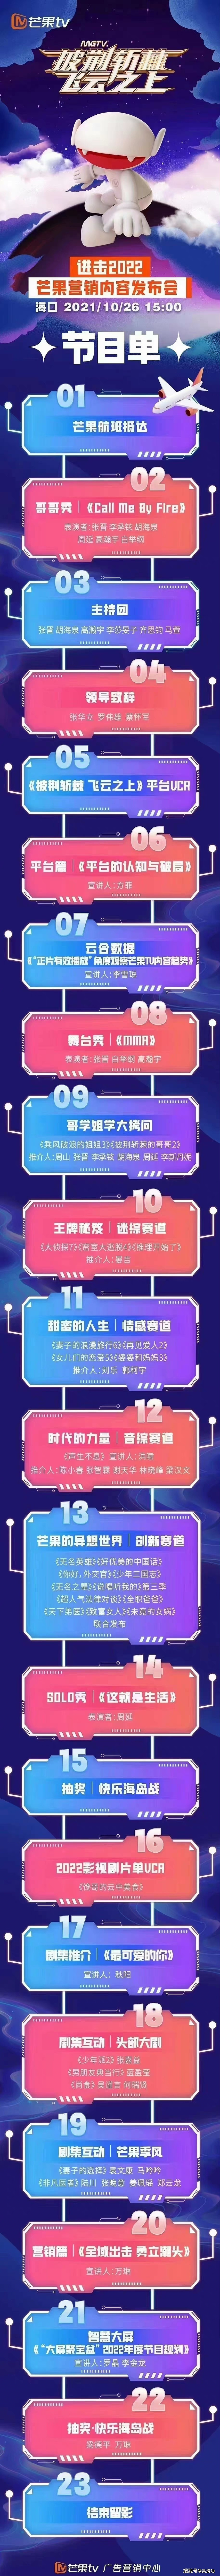 芒果TV招商会：张晋担任4个角色成赢家，《披哥2》《浪姐3》定档 - 1